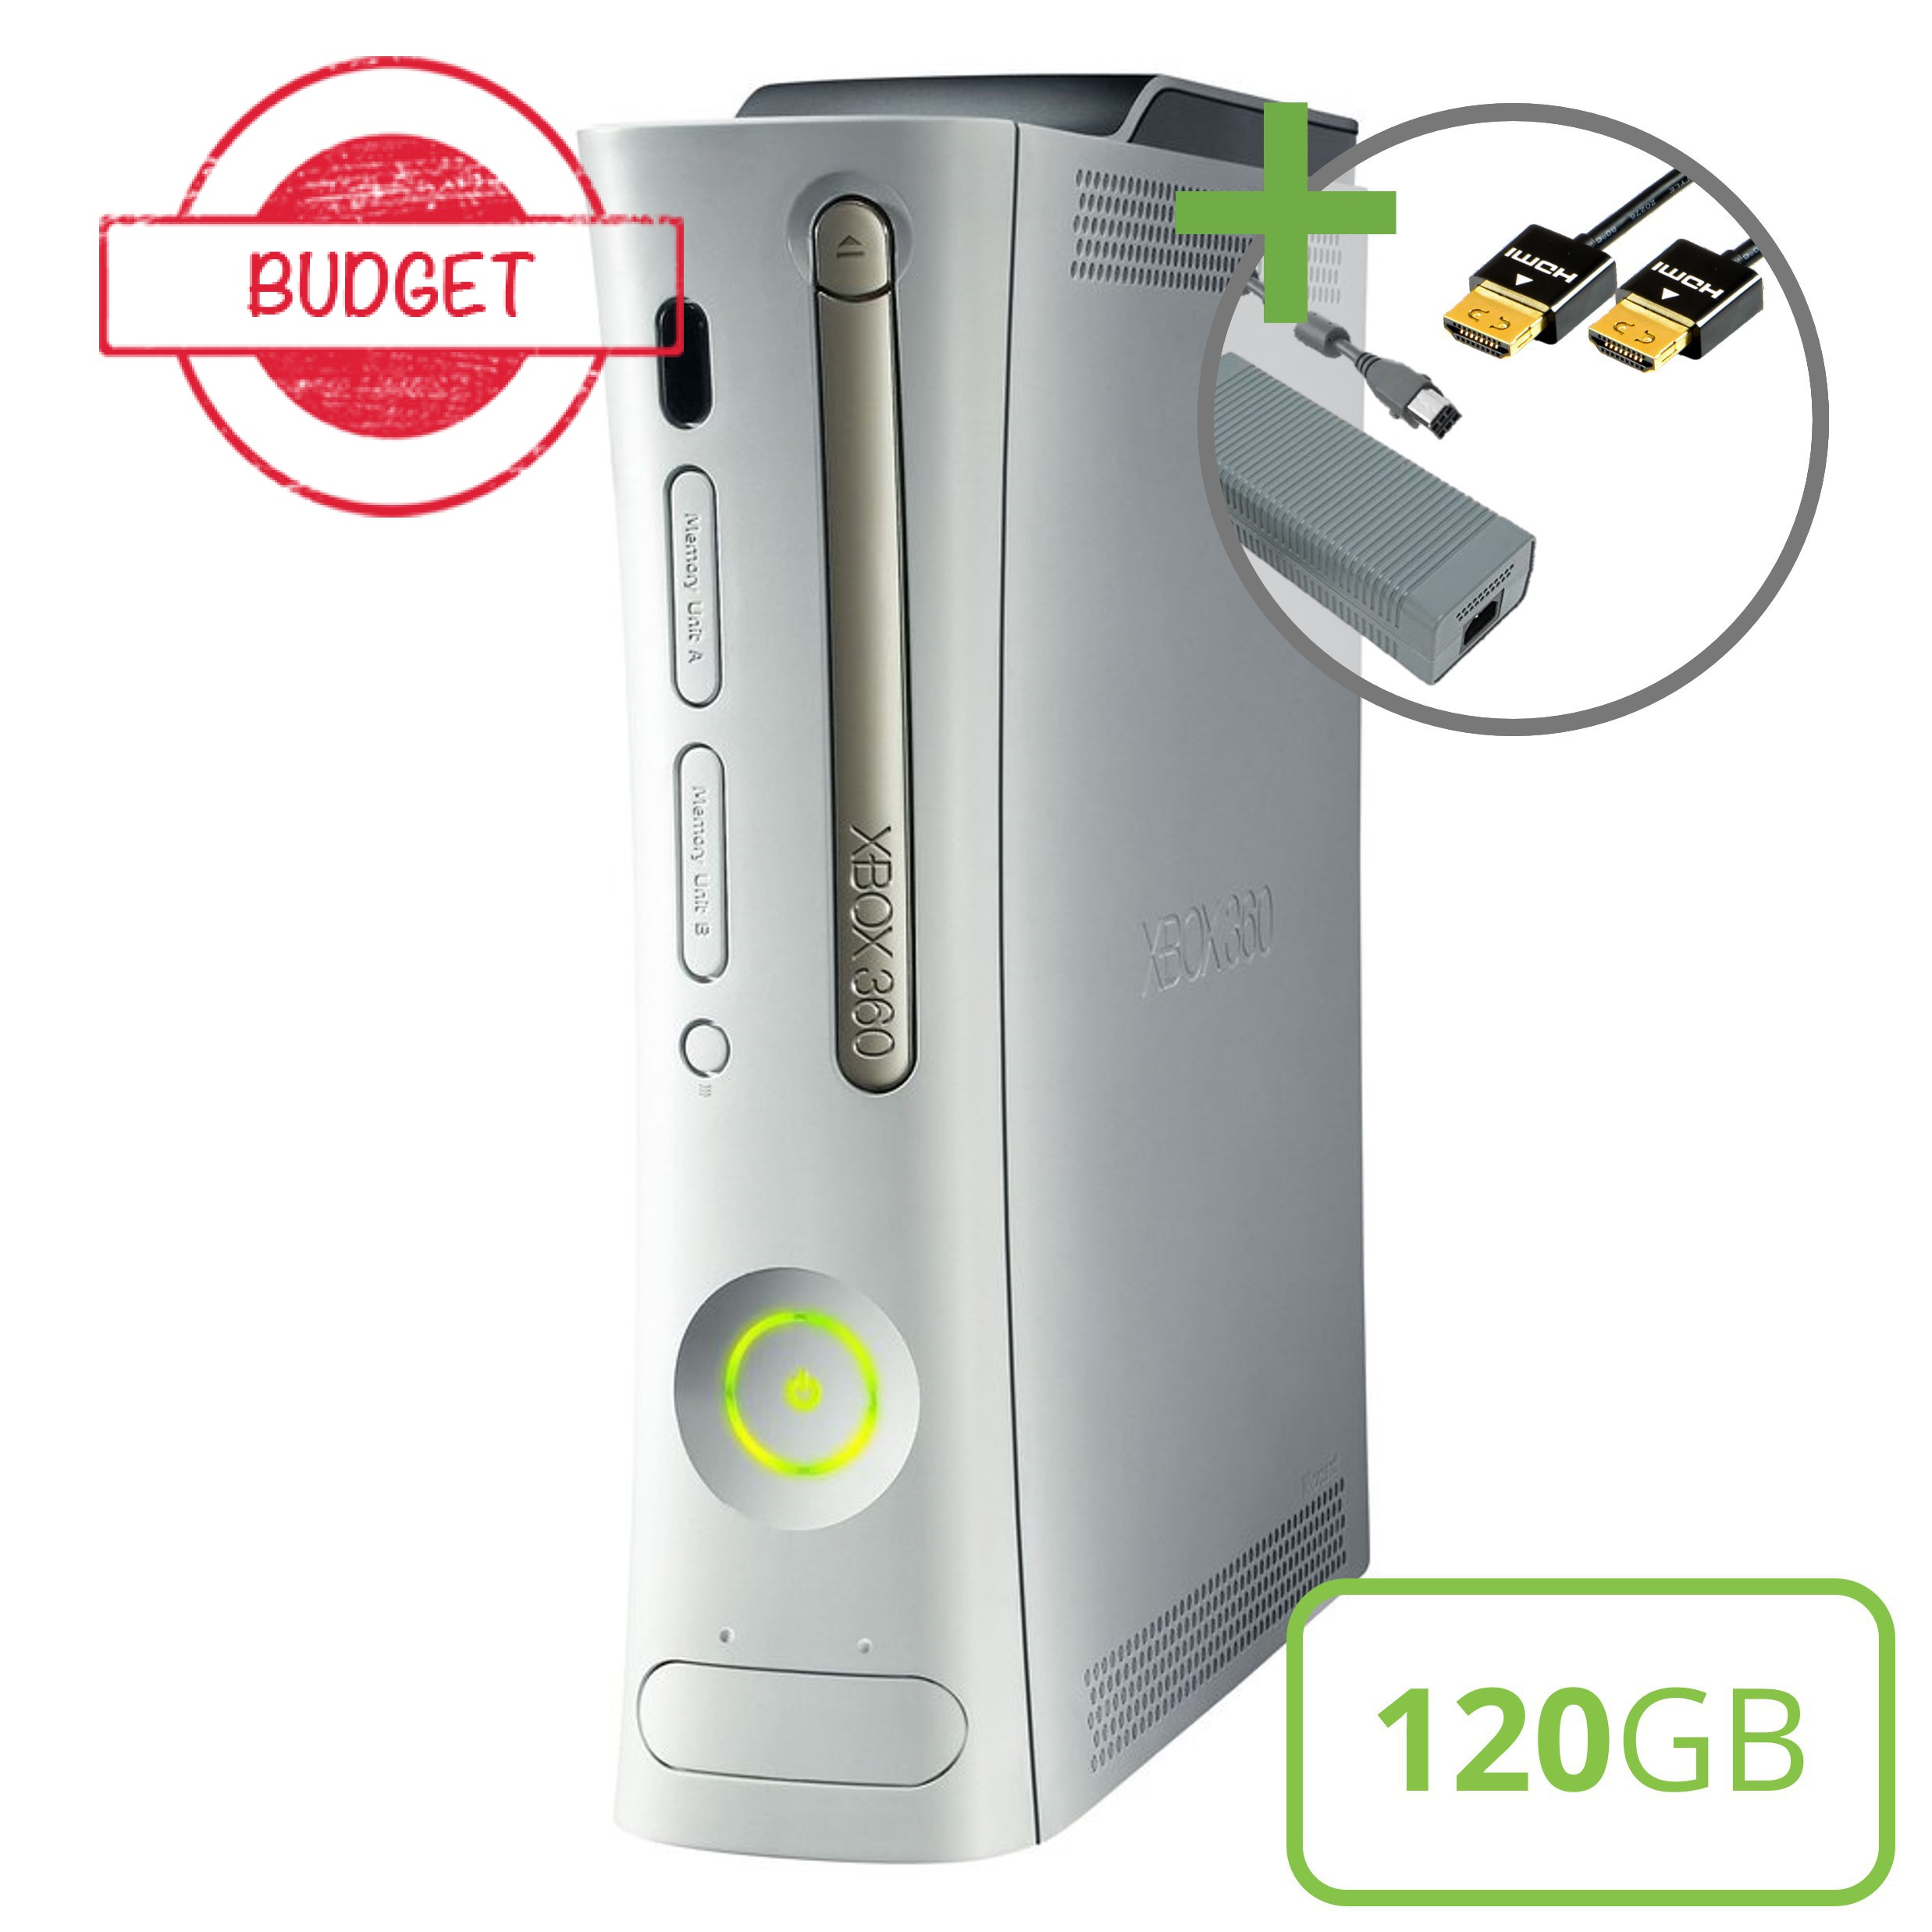 Microsoft Xbox 360 Premium Console (HDMI) - 120GB - Budget - Xbox 360 Hardware